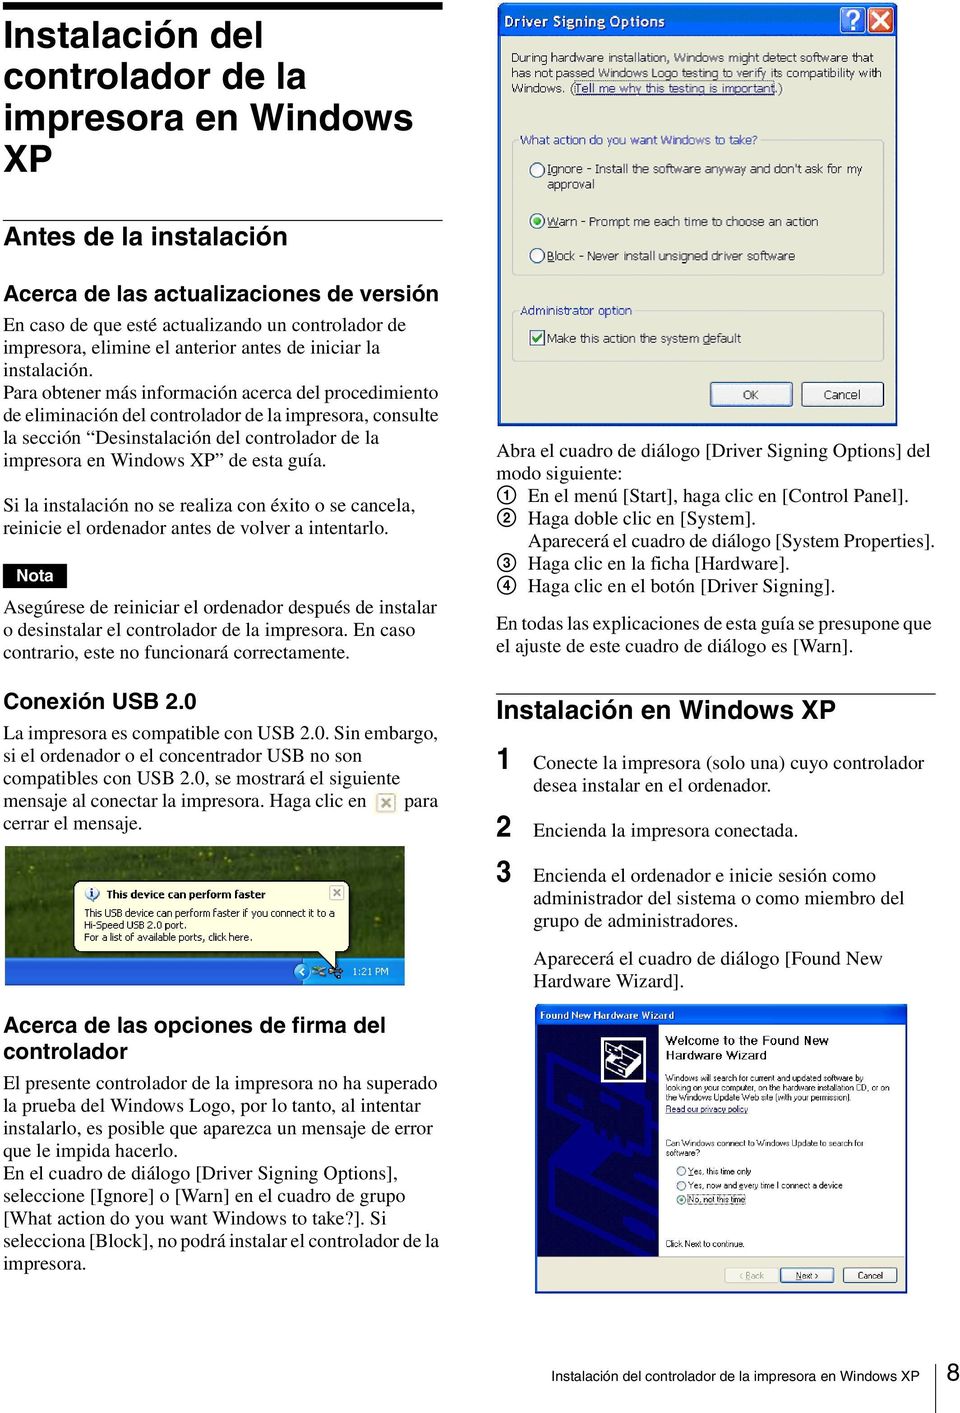 Para obtener más información acerca del procedimiento de eliminación del controlador de la impresora, consulte la sección Desinstalación del controlador de la impresora en Windows XP de esta guía.